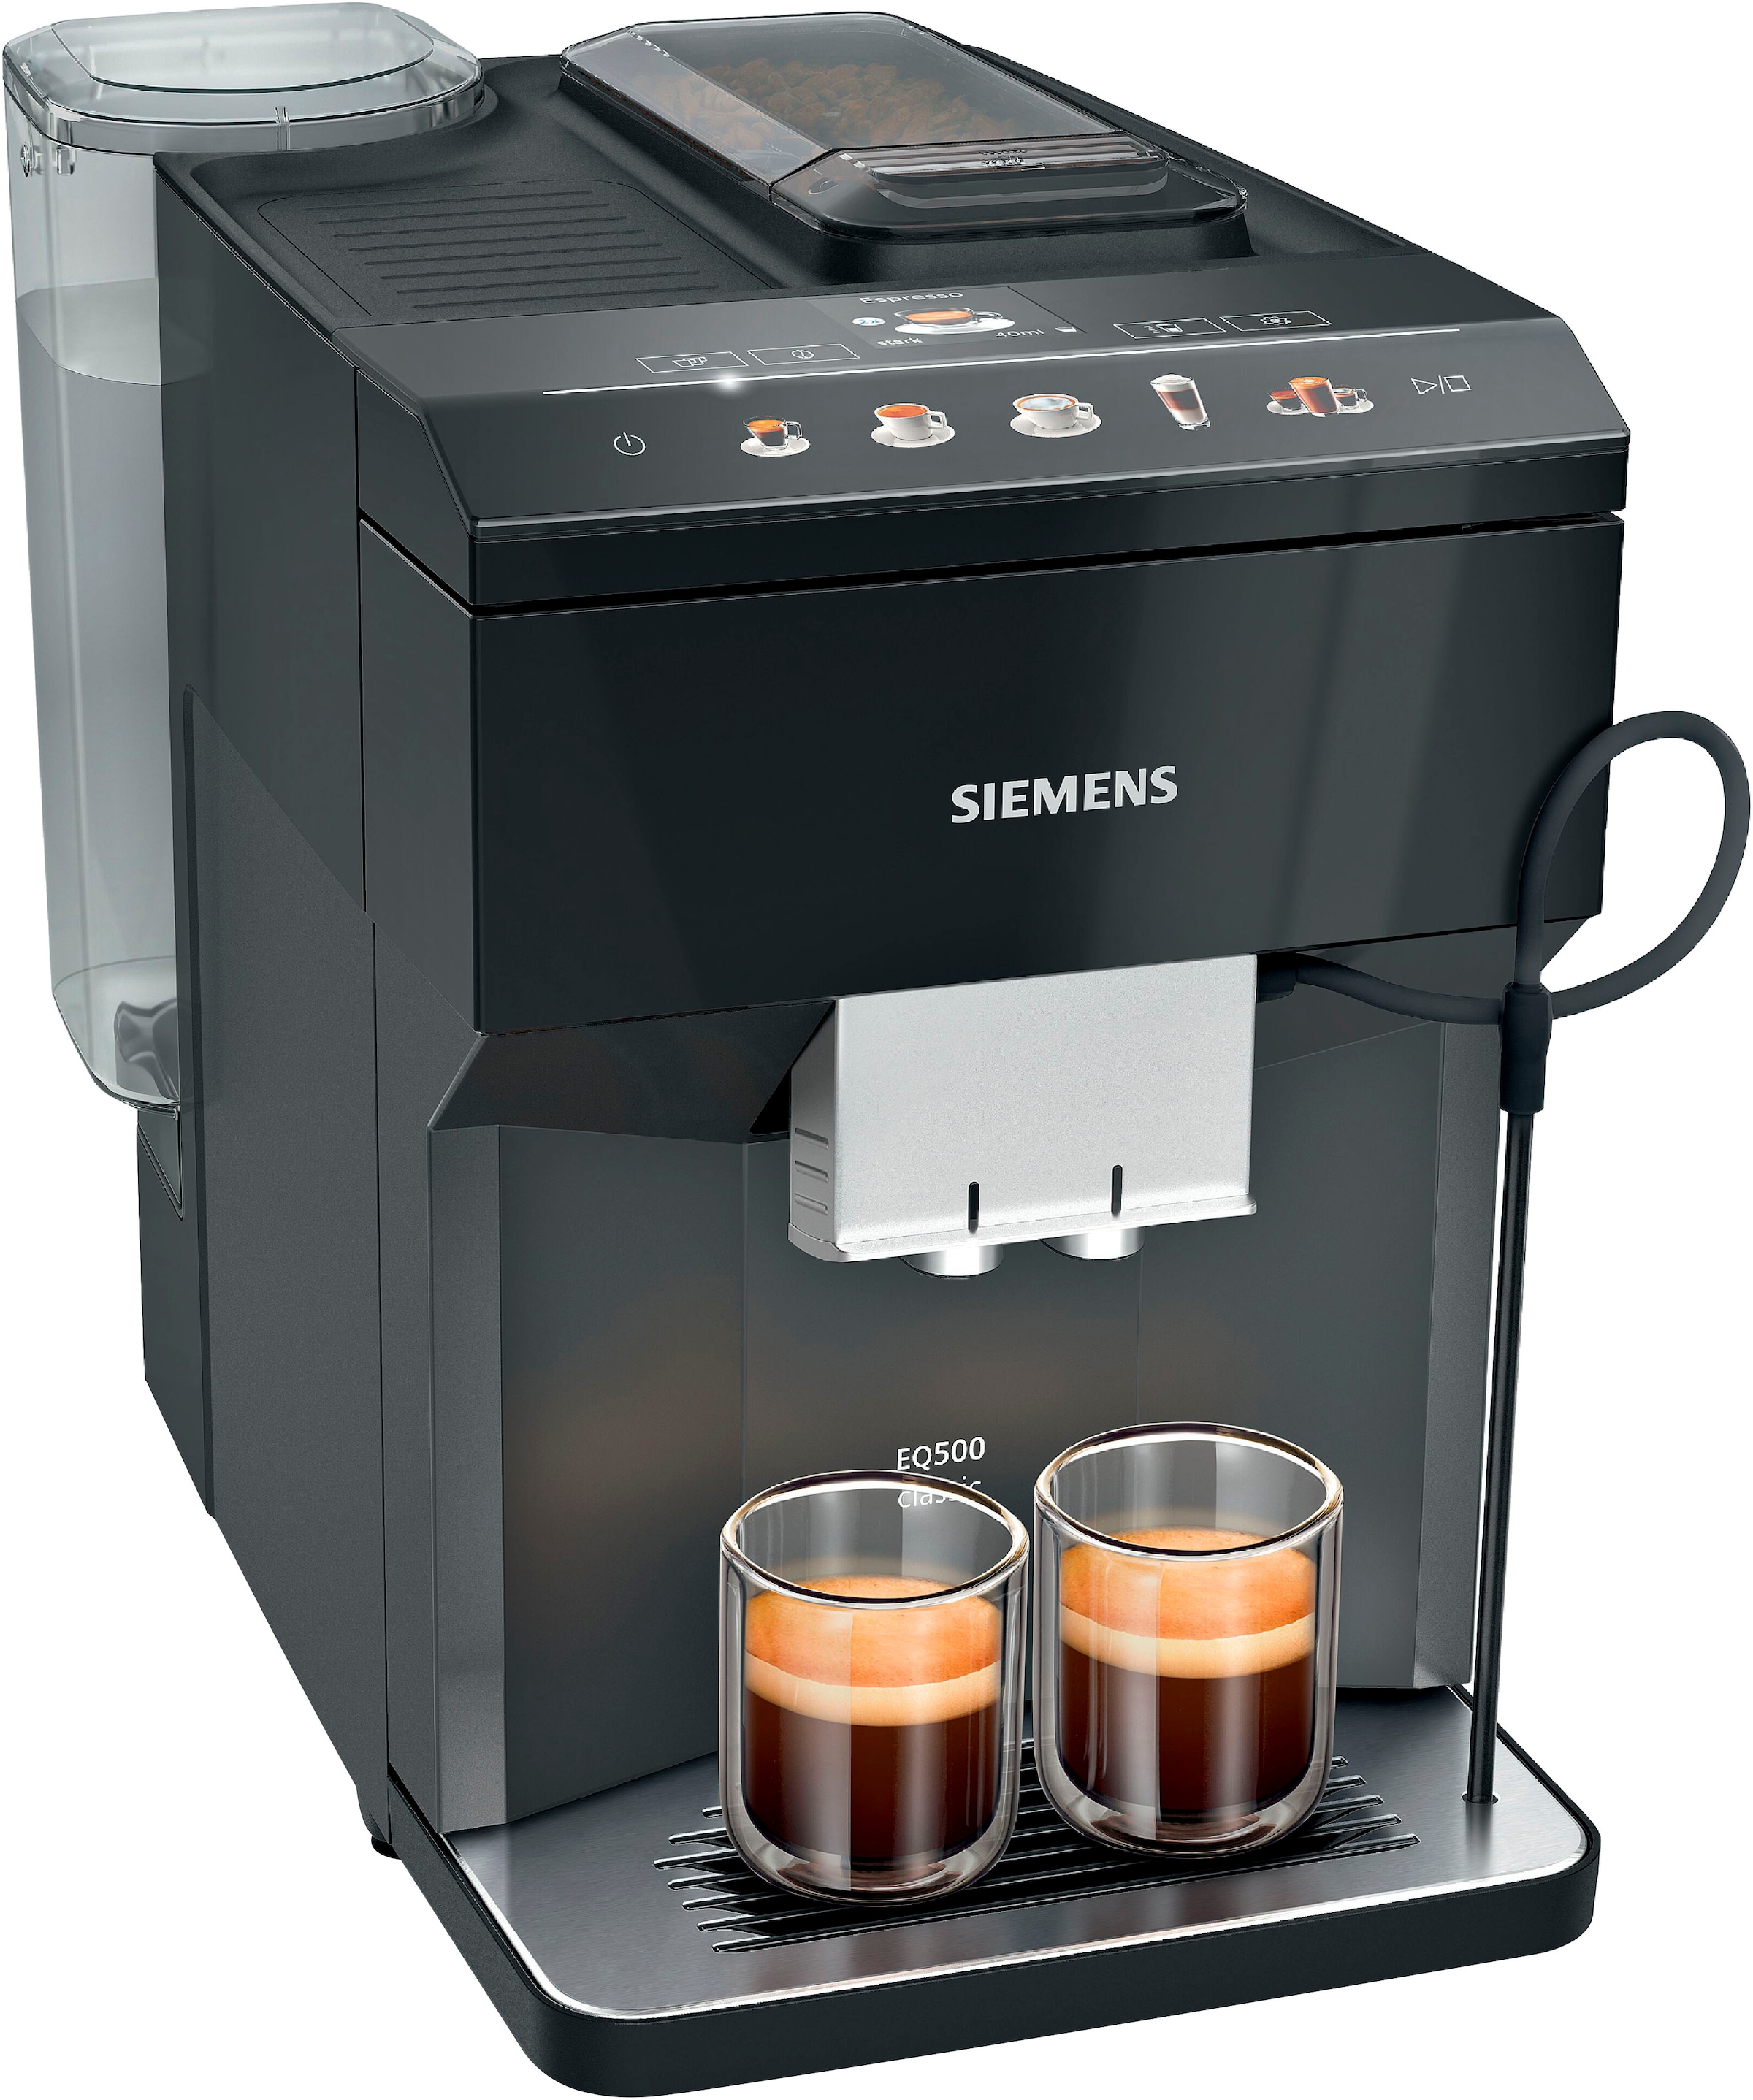 SIEMENS Kaffeevollautomat »EQ500 classic TP513D09«, viele  Spezialitäten,Doppeltassenfunktion, auto.Dampfreinigung,schwarz bestellen